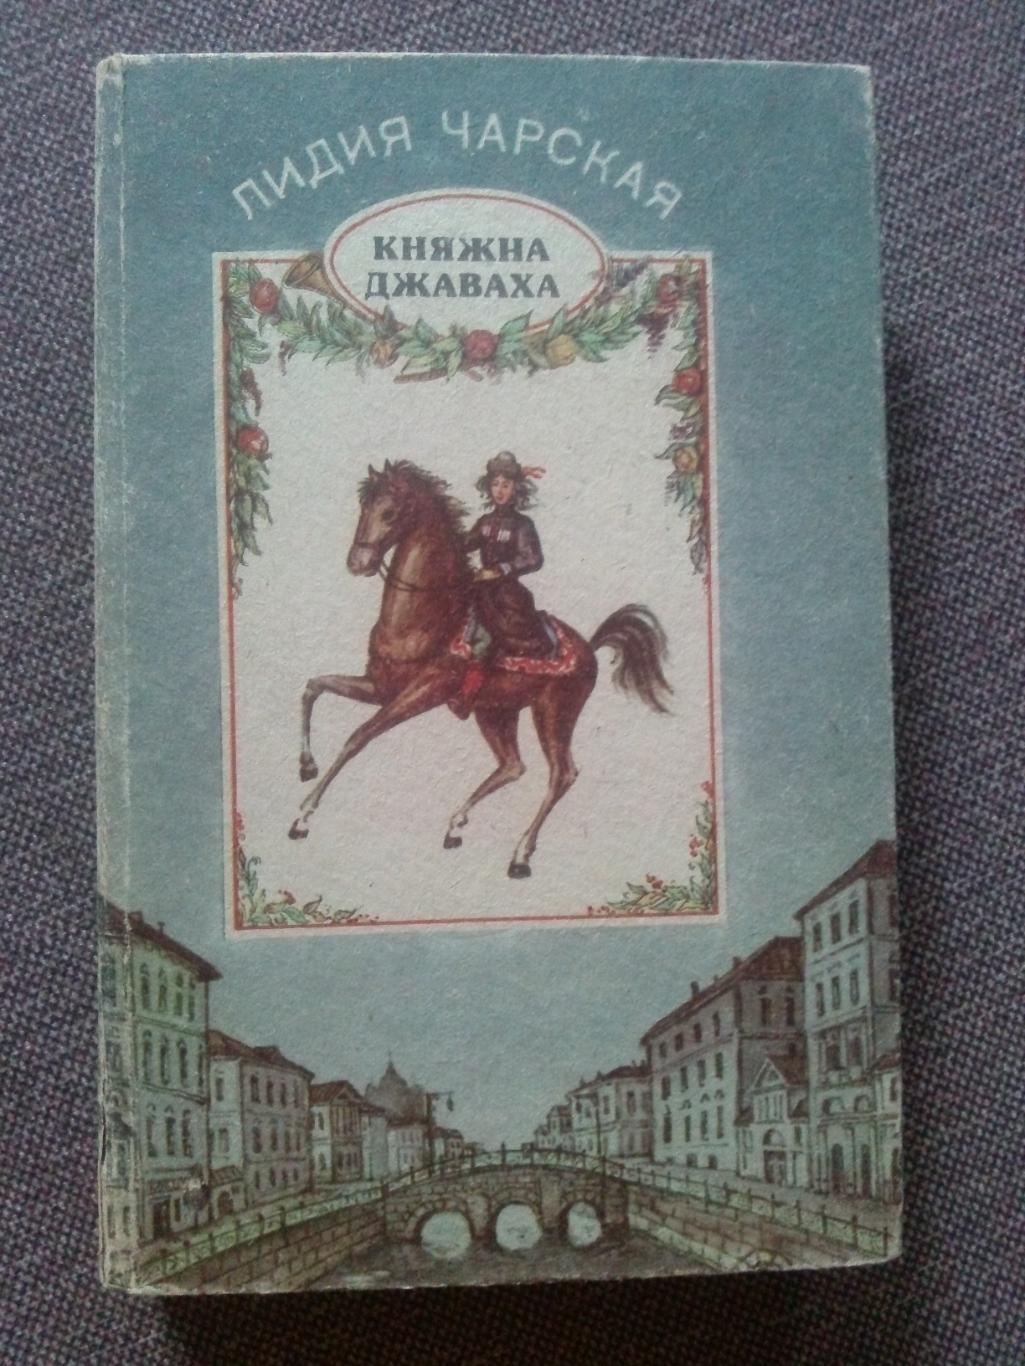 Лидия Чарская - Княжна Джаваха , Сибирочка , Щелчок 1992 г. (3 романа)